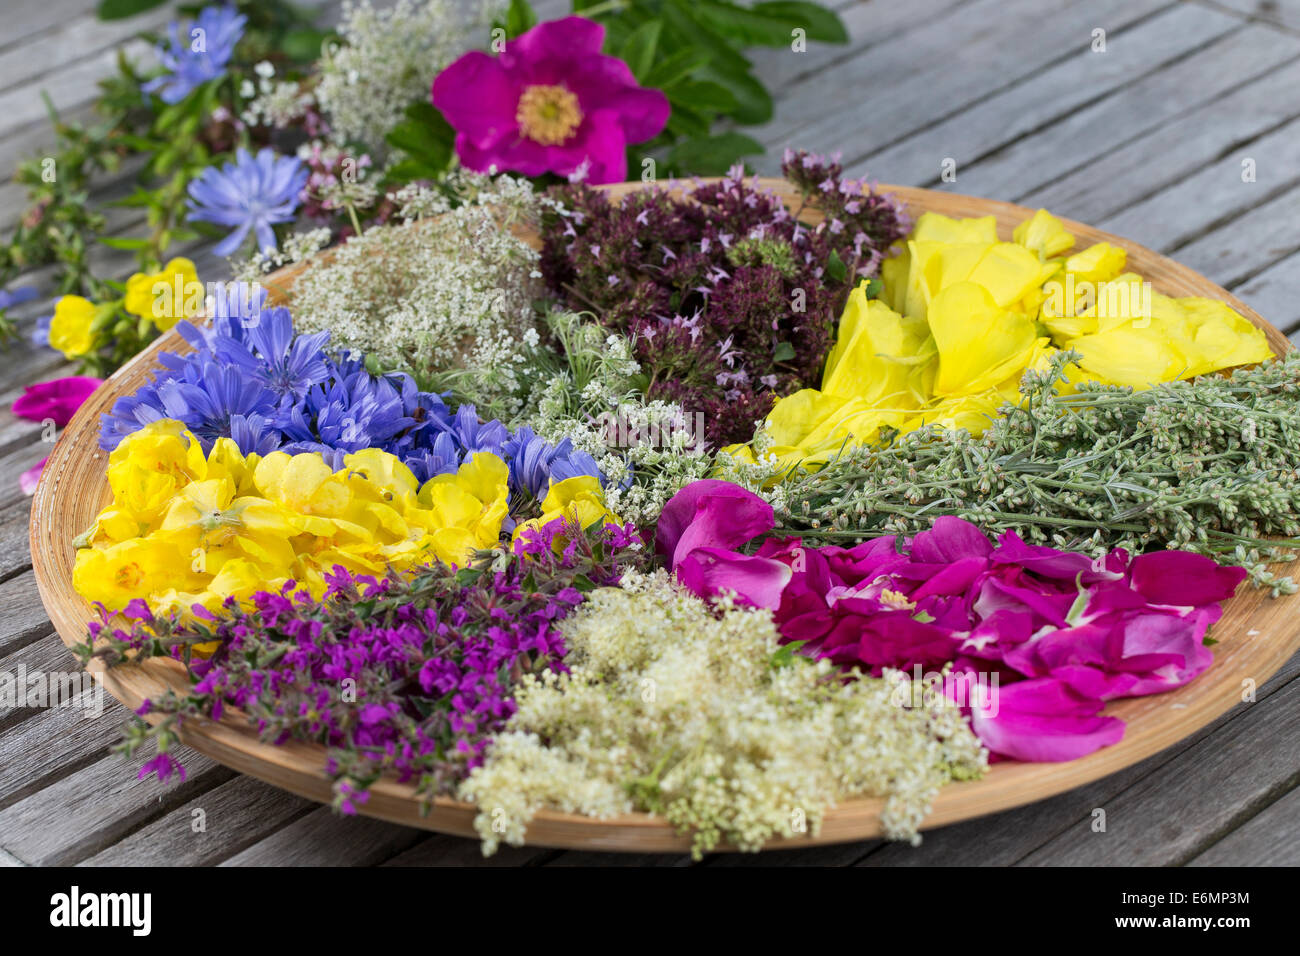 Blütenteller, Blüten, Blumen, Kräuter Kräuter, Kräuterernte Blütenblätter, Debussy, auf einem Teller sortiert zum Trocknen, essb Banque D'Images